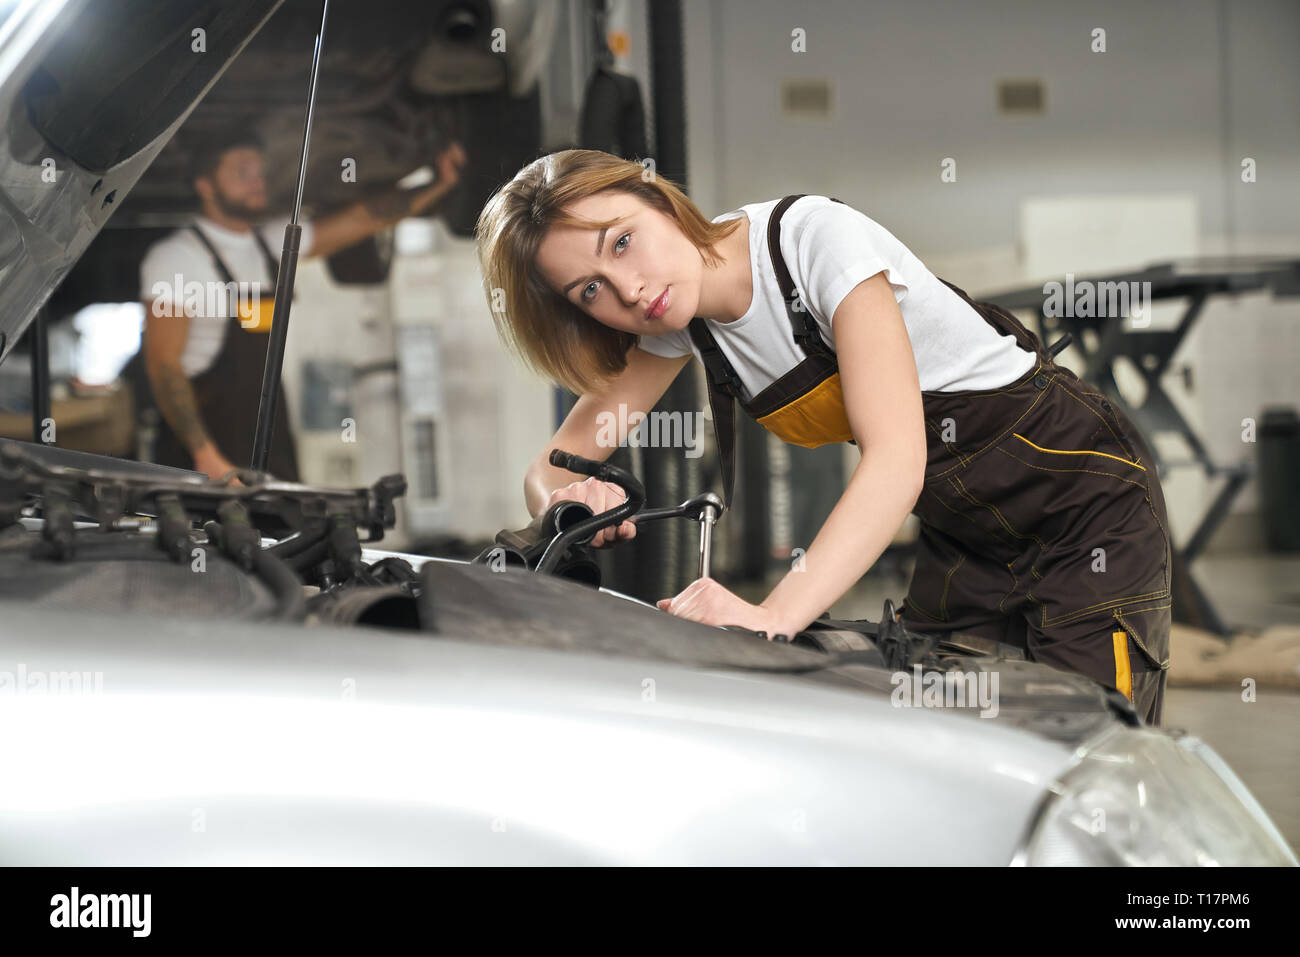 Mechaniker Mädchen tragen in Overalls und weißes T-Shirt Auto reparieren. Hübsche junge Frau lehnte sich auf dem Auto, Instrument und Kamera, posiert in Autoservice. Stockfoto